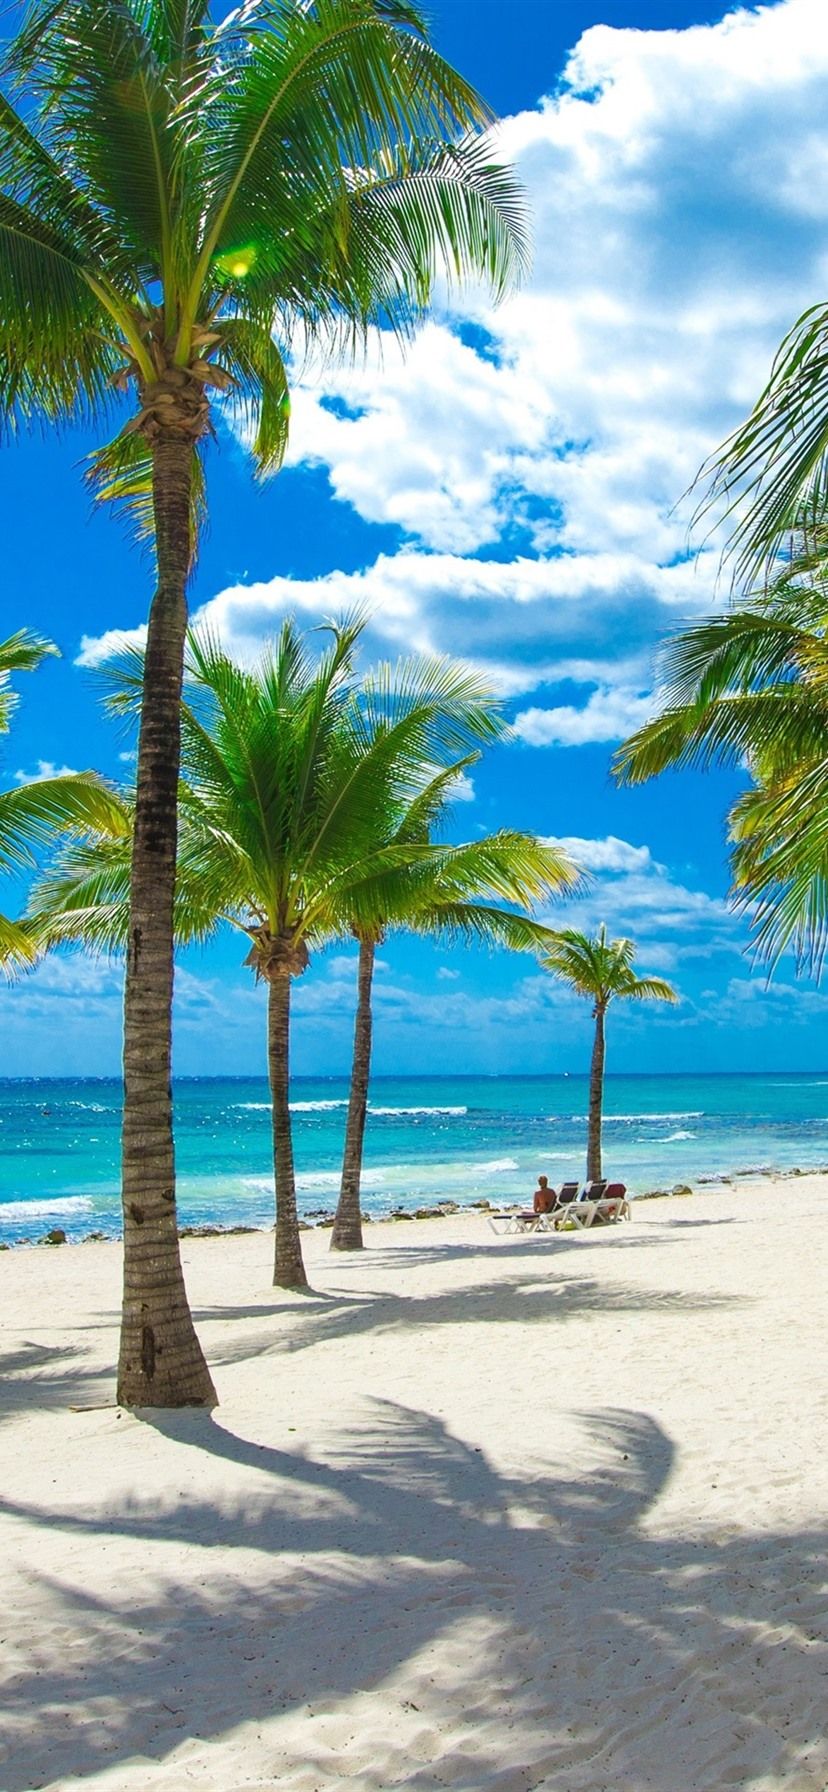 Beach, sea, palm trees, tropical, clouds, sunshine 1080x1920